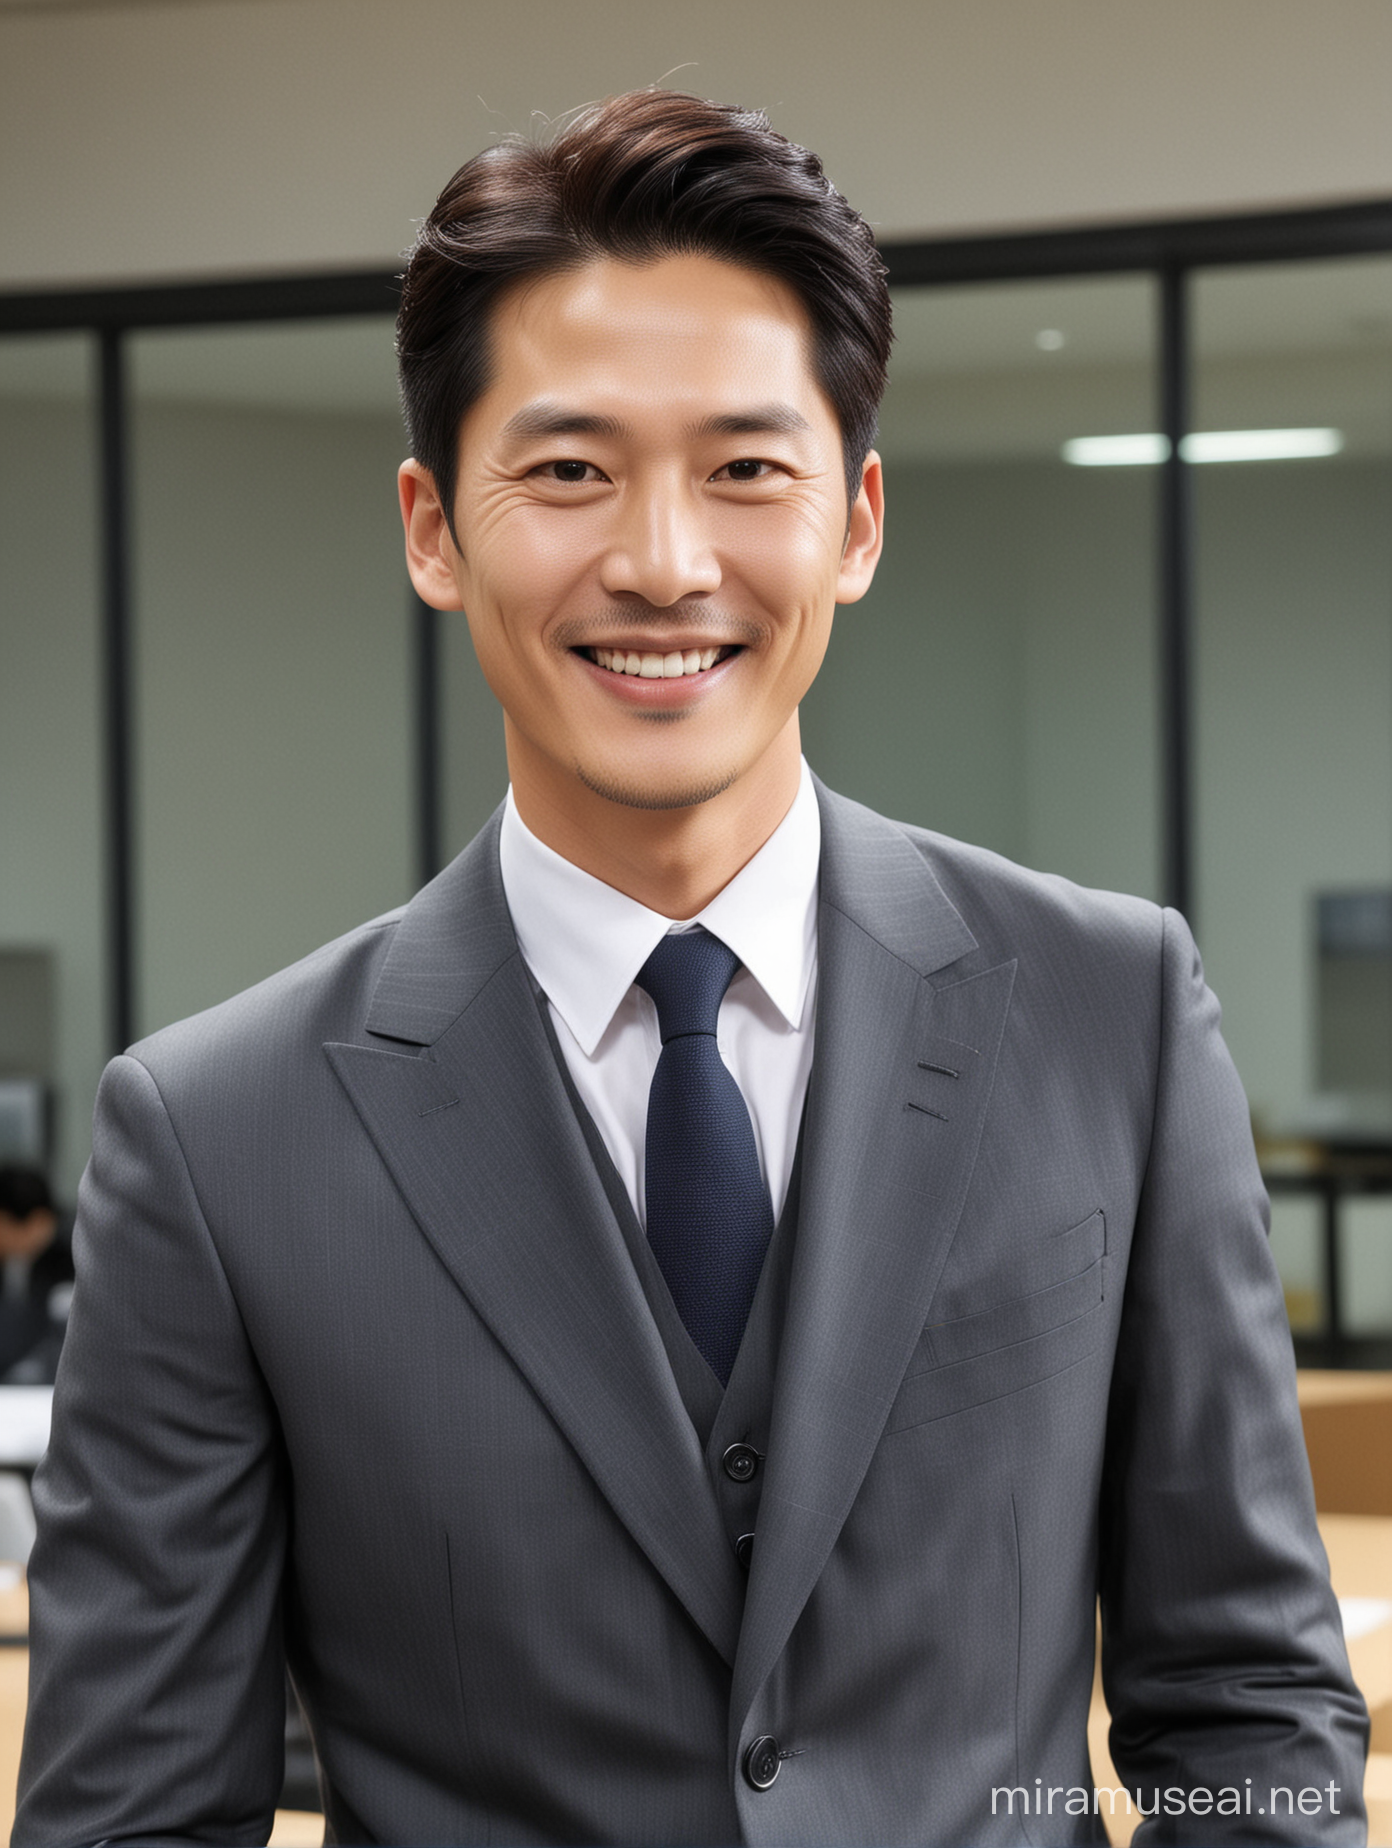 정장을 입은 한국 남자, 단정하고 짧은 머리, 배우 이정재를 닮음, 밝은 미소, 오피스, 보험 회사 오피스 배경